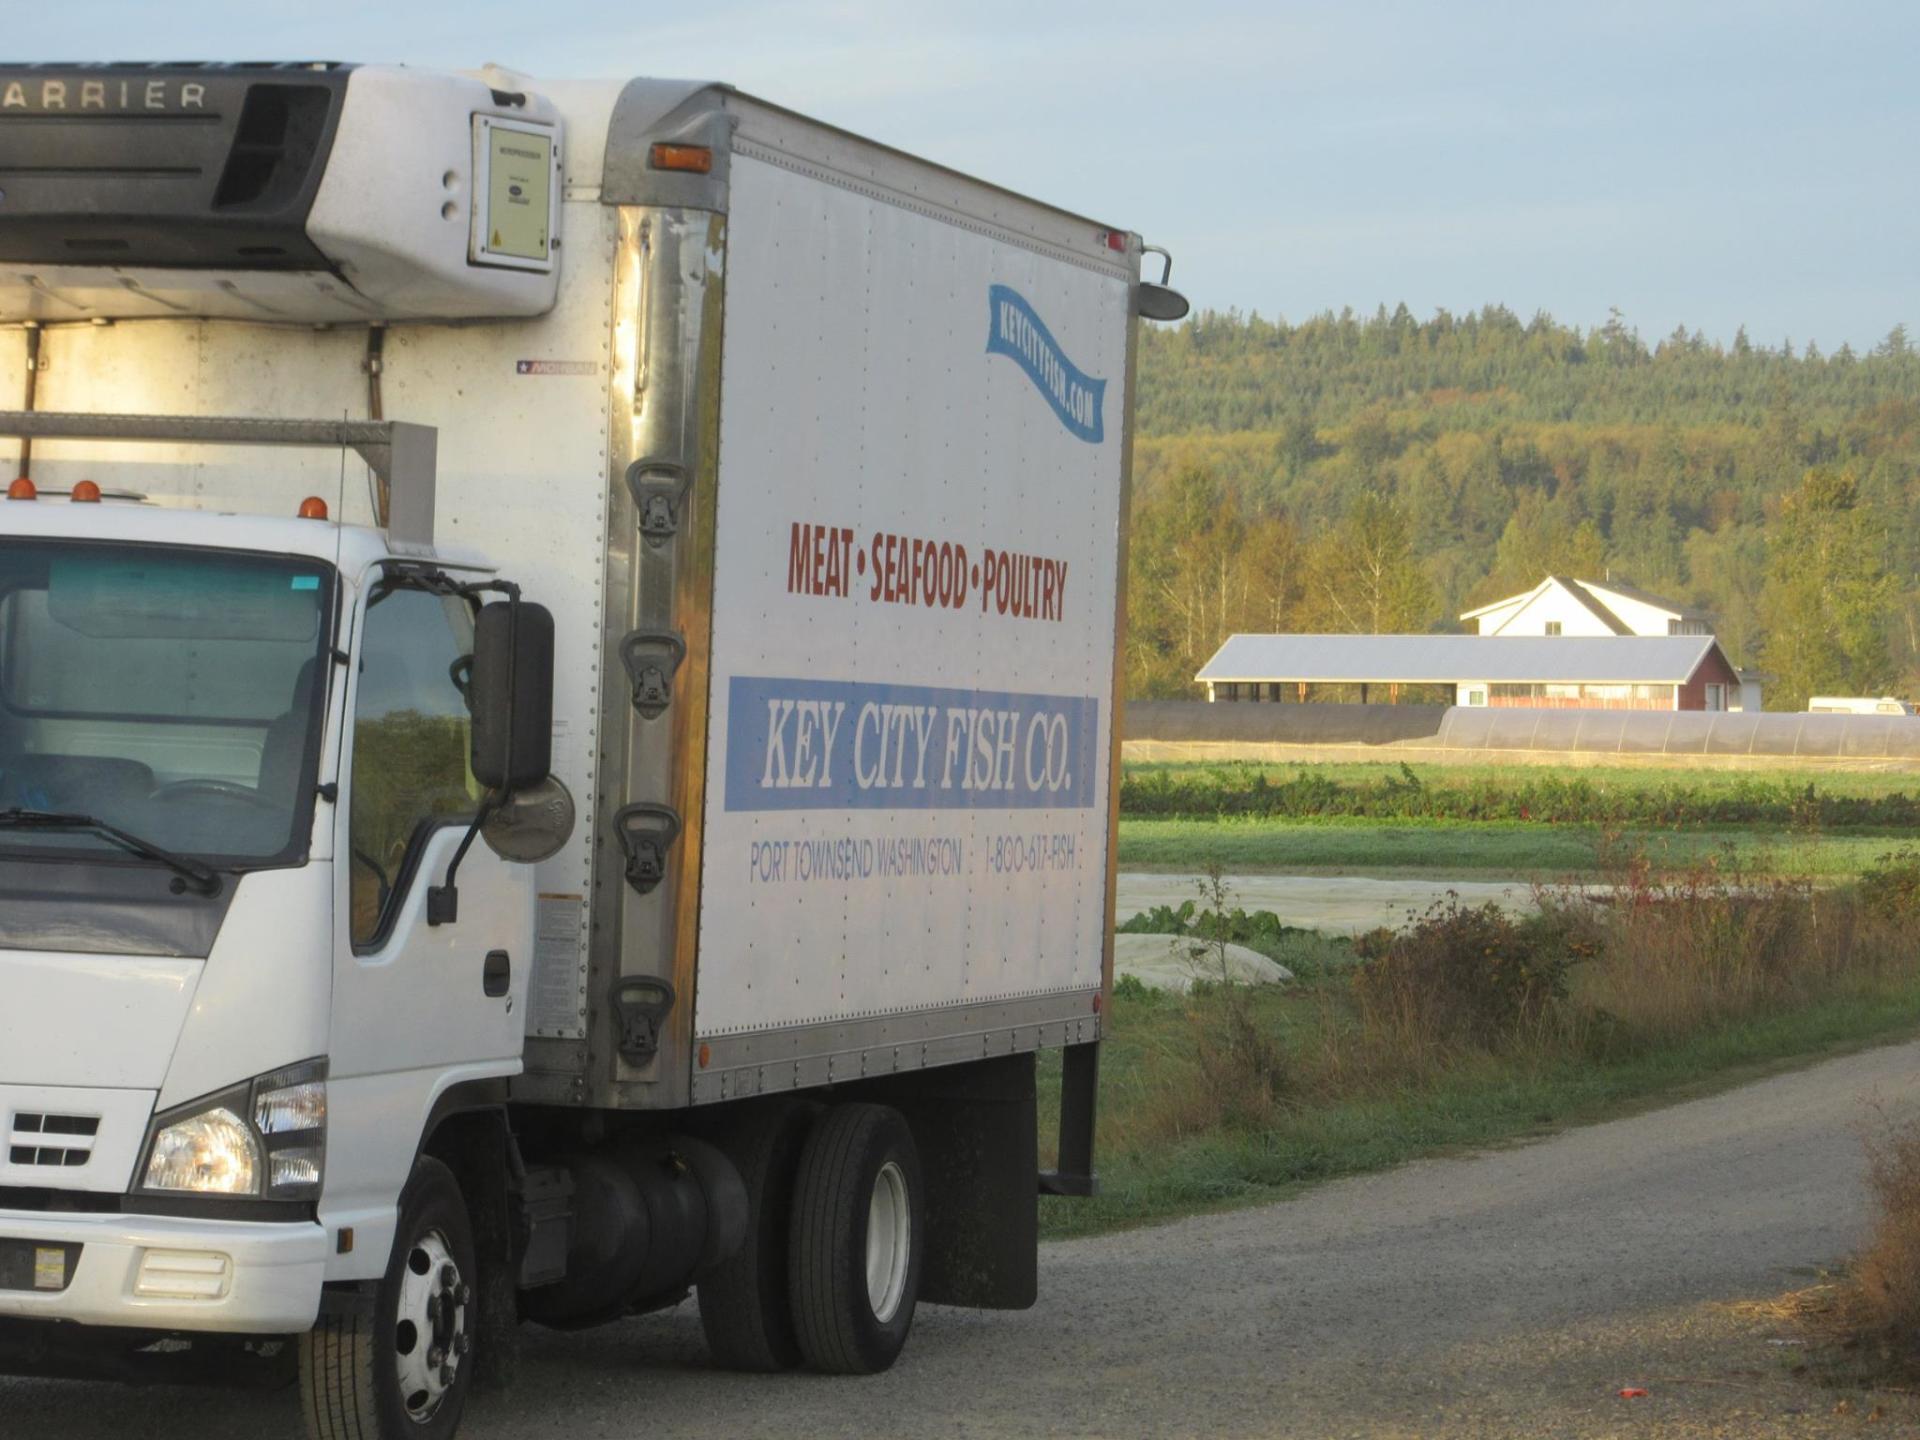 UPS ships Kay City Fish Co. food products  to Washington residents at reduced rates